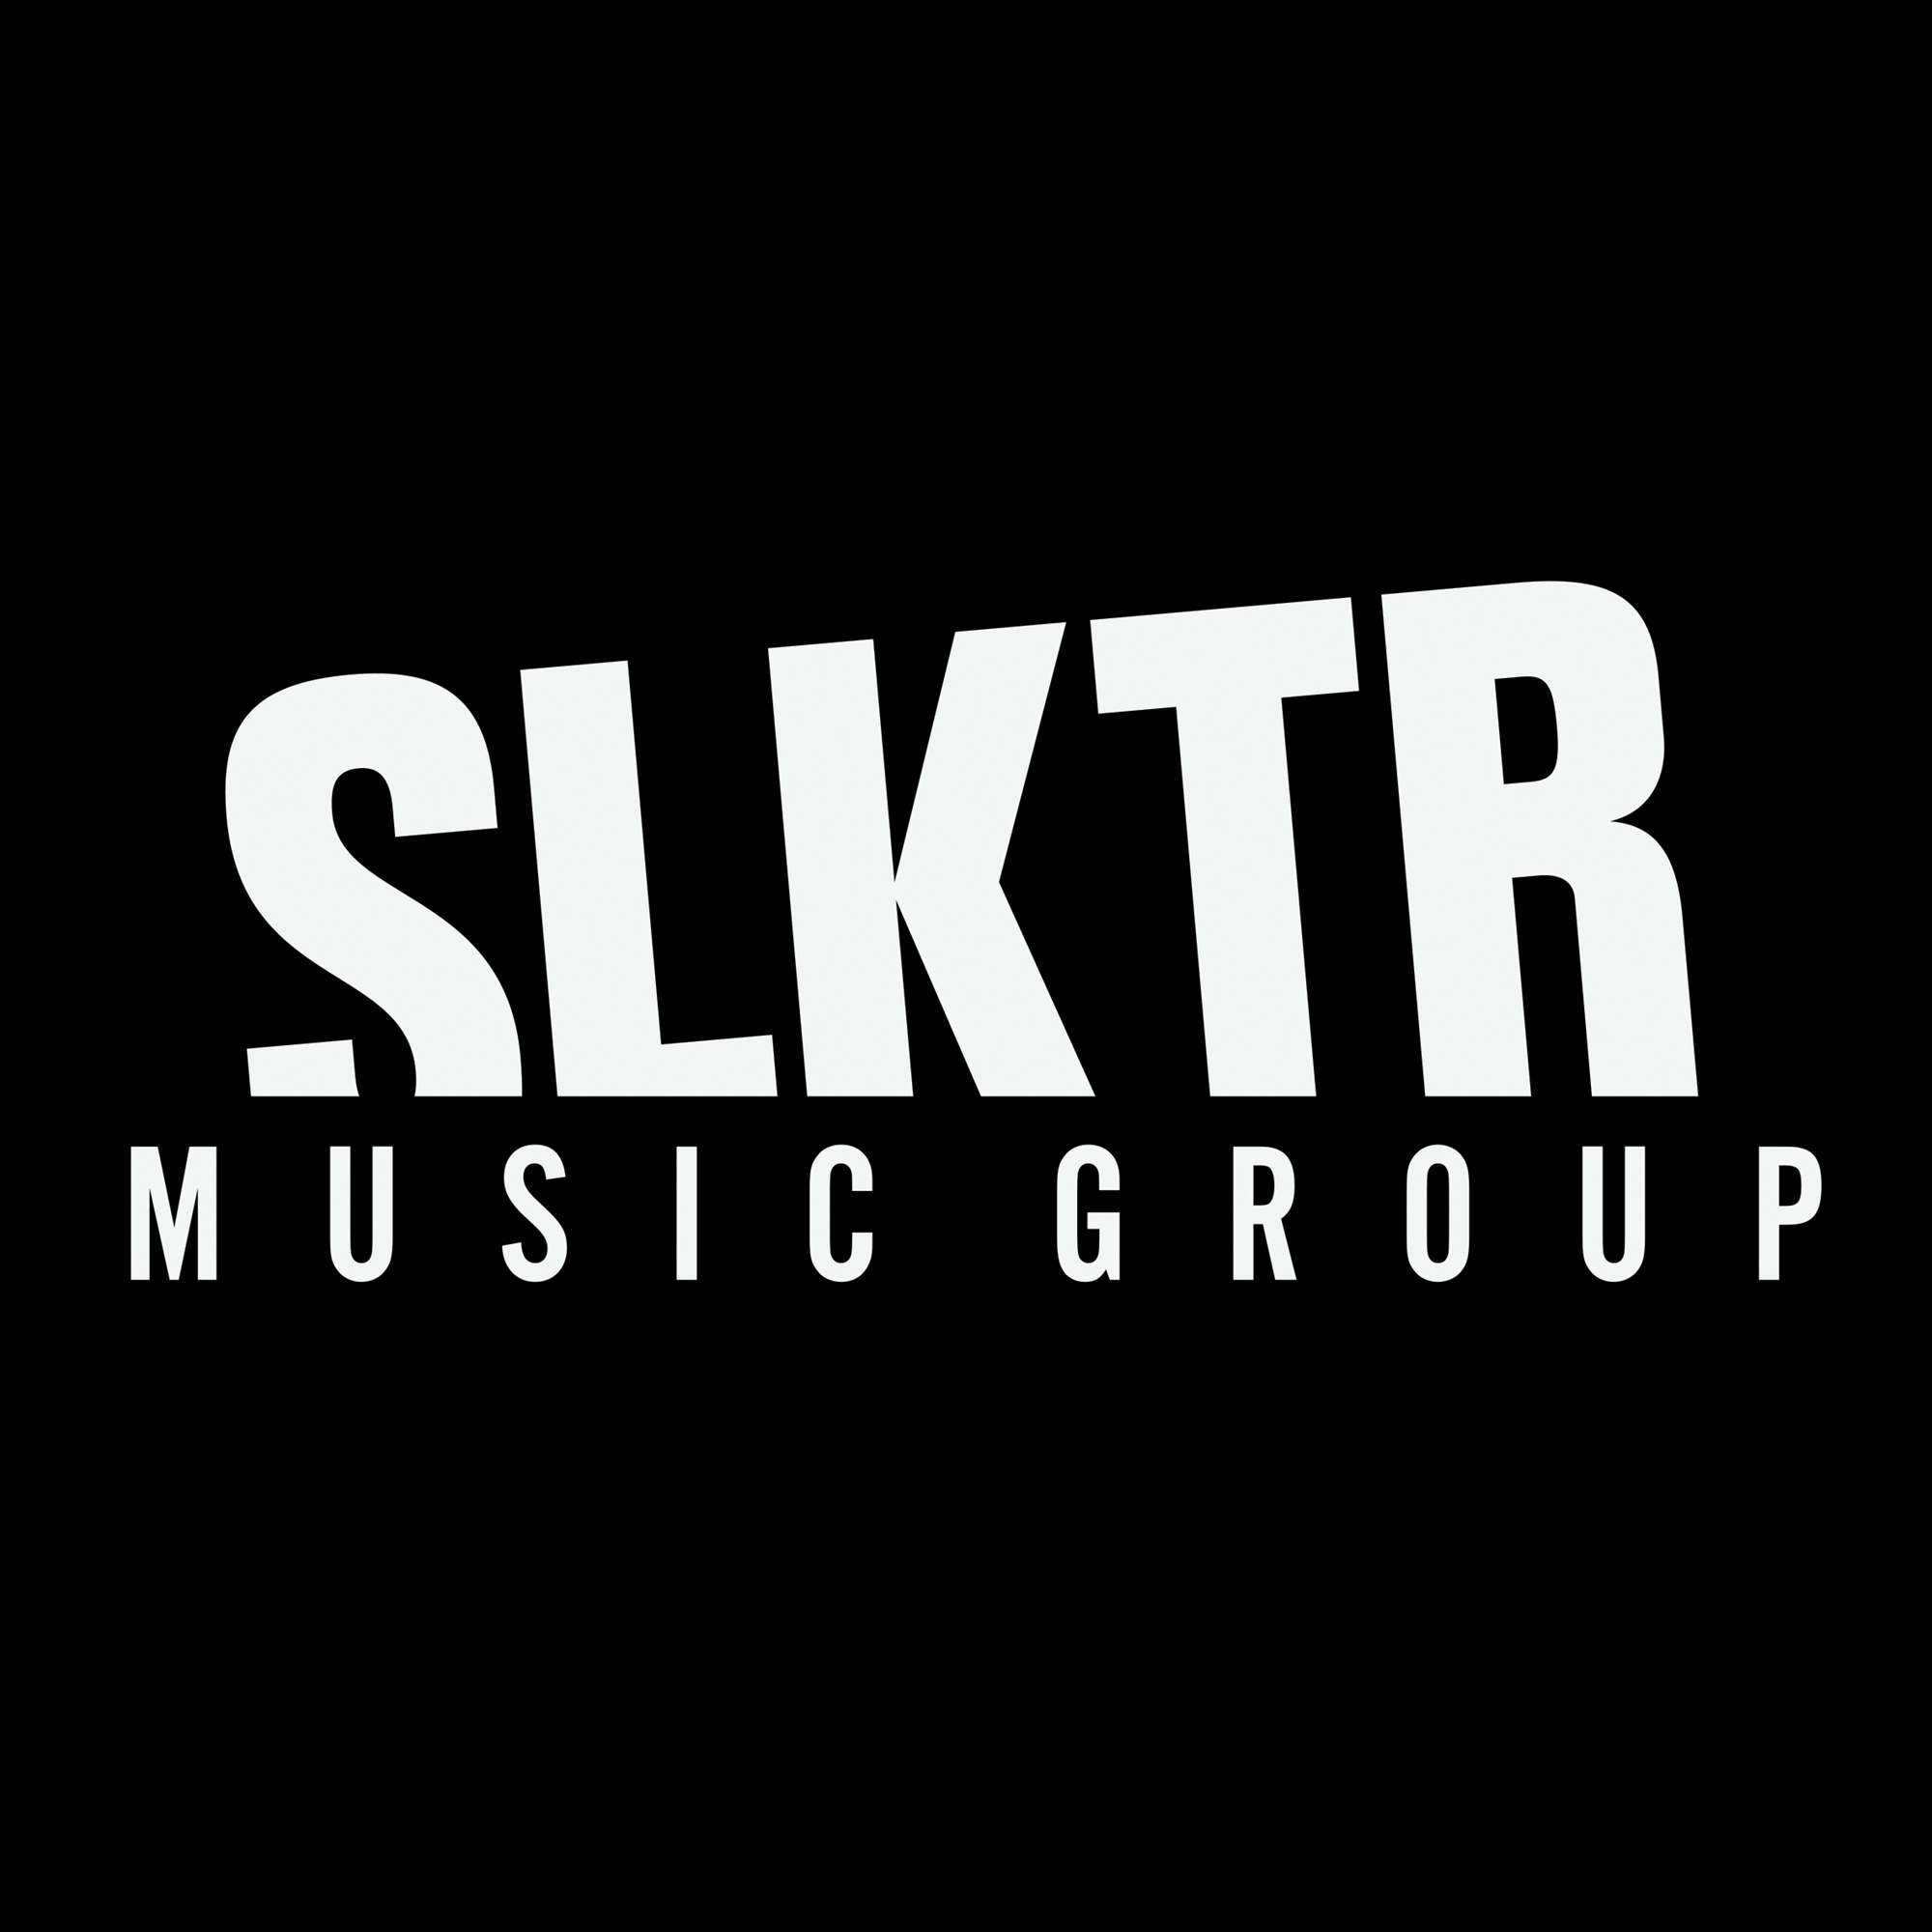 SLKTR Music Group